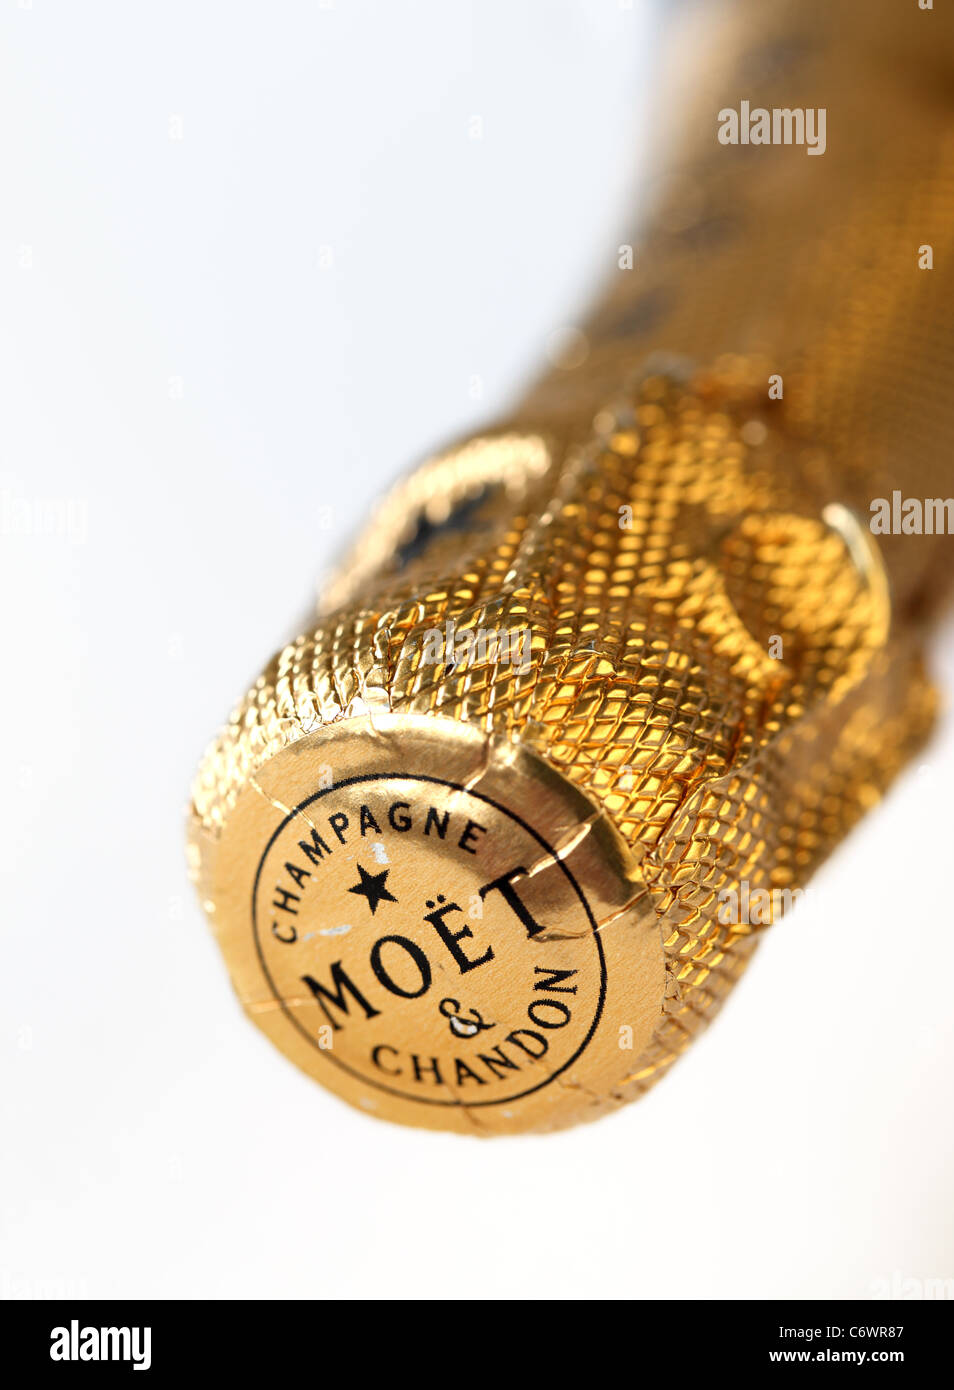 In der Nähe der Gold Folie oben eine ungeöffnete Flasche Moet & Chandon, Champagner Stockfoto